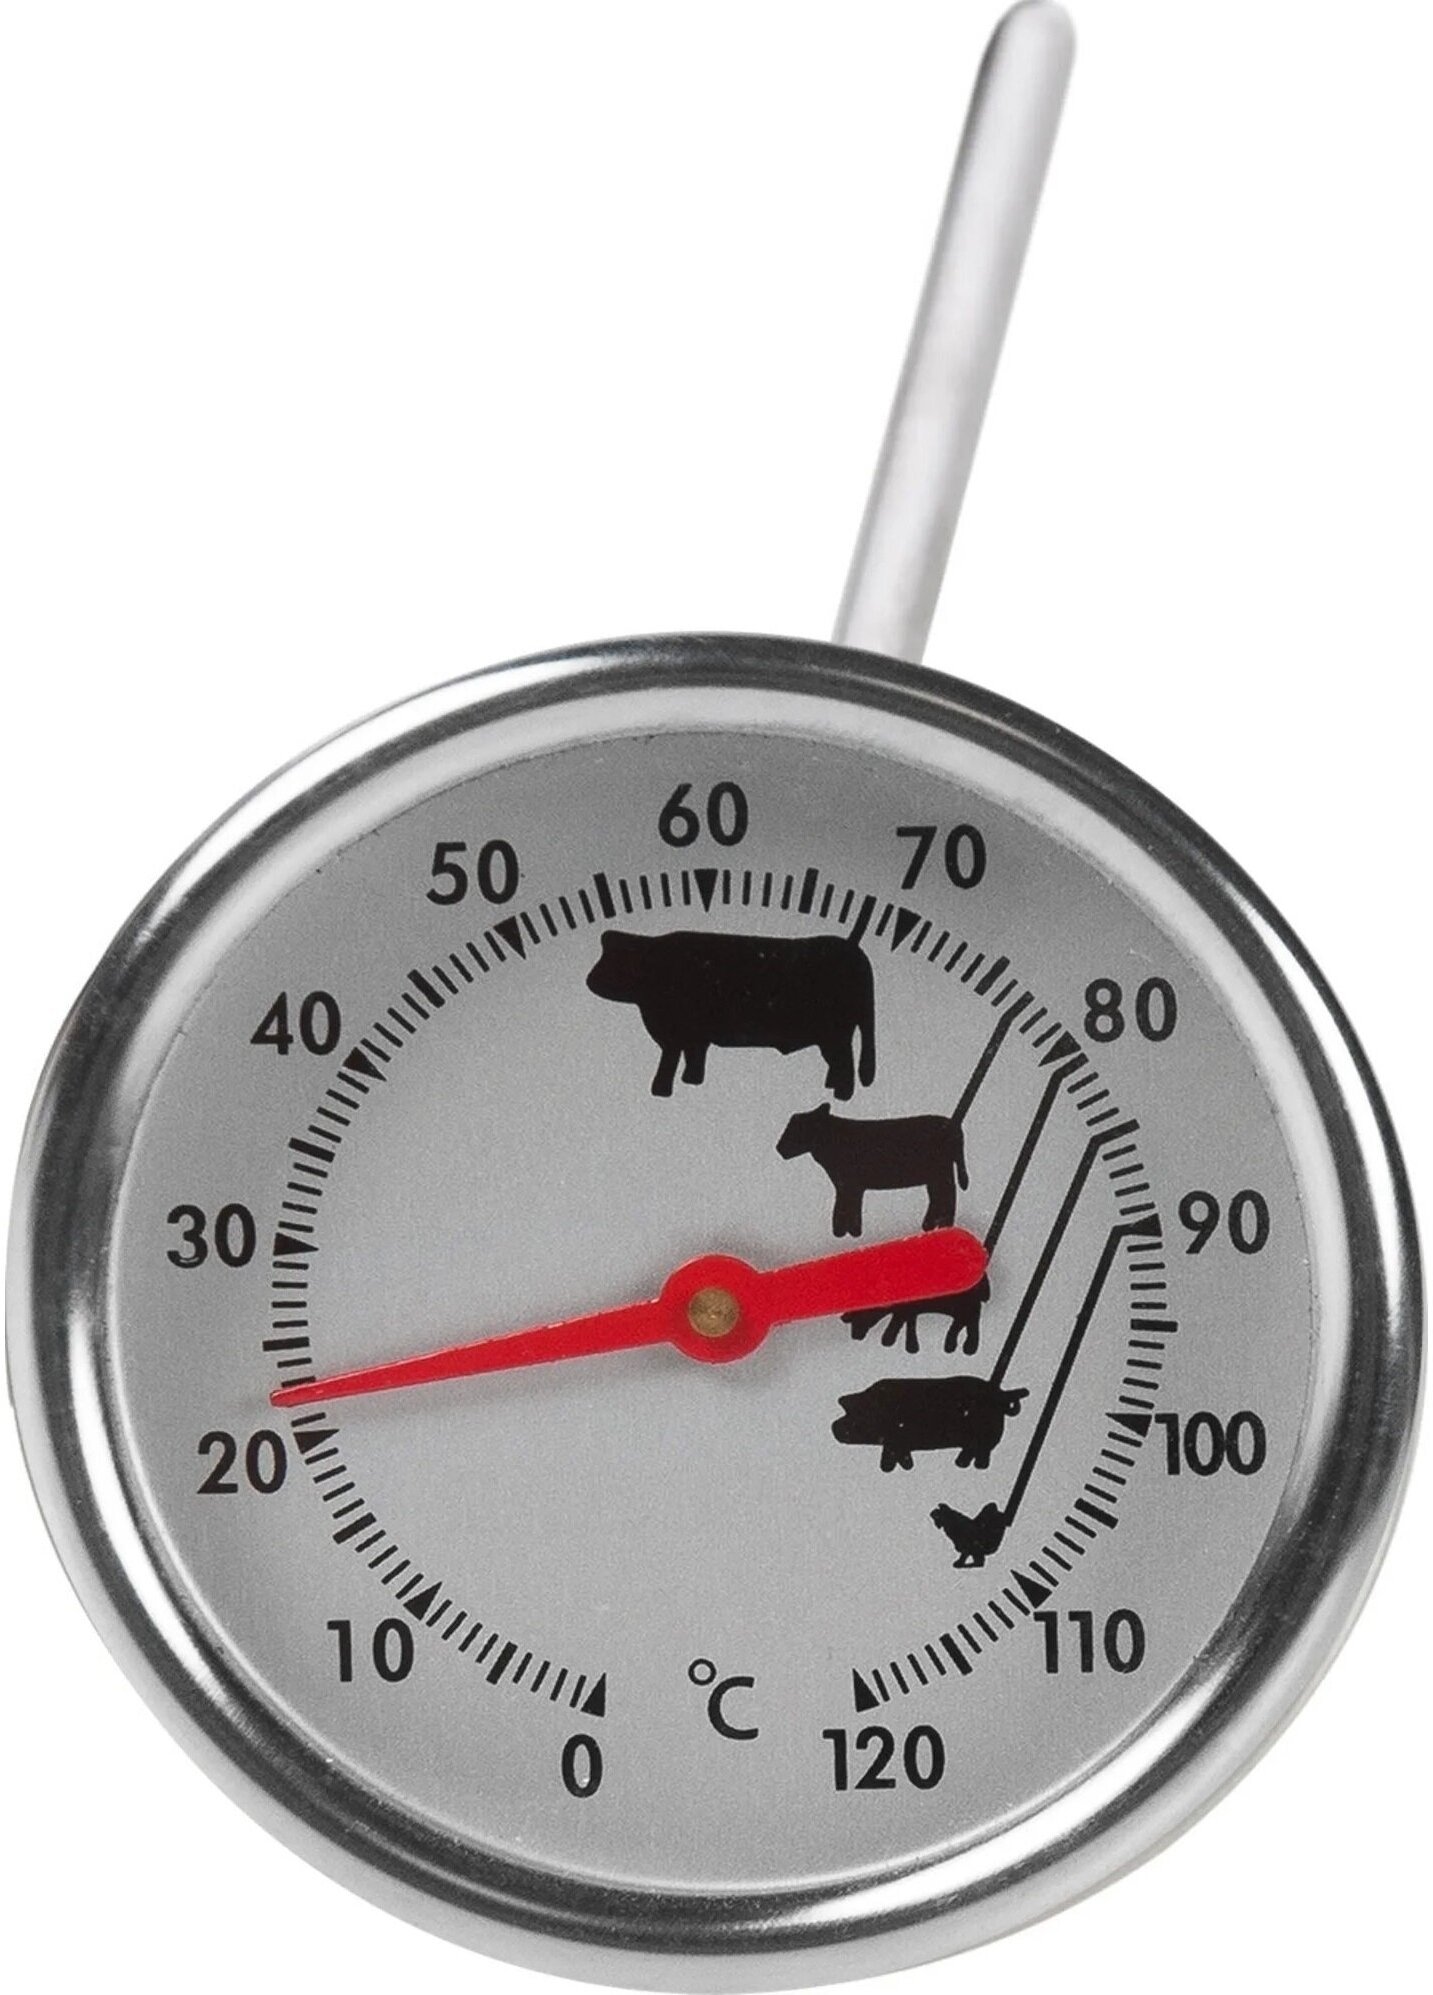 Термометр для гриля и барбекю поможет определить степень готовности мяса и подать блюдо заранее известной степени прожарки